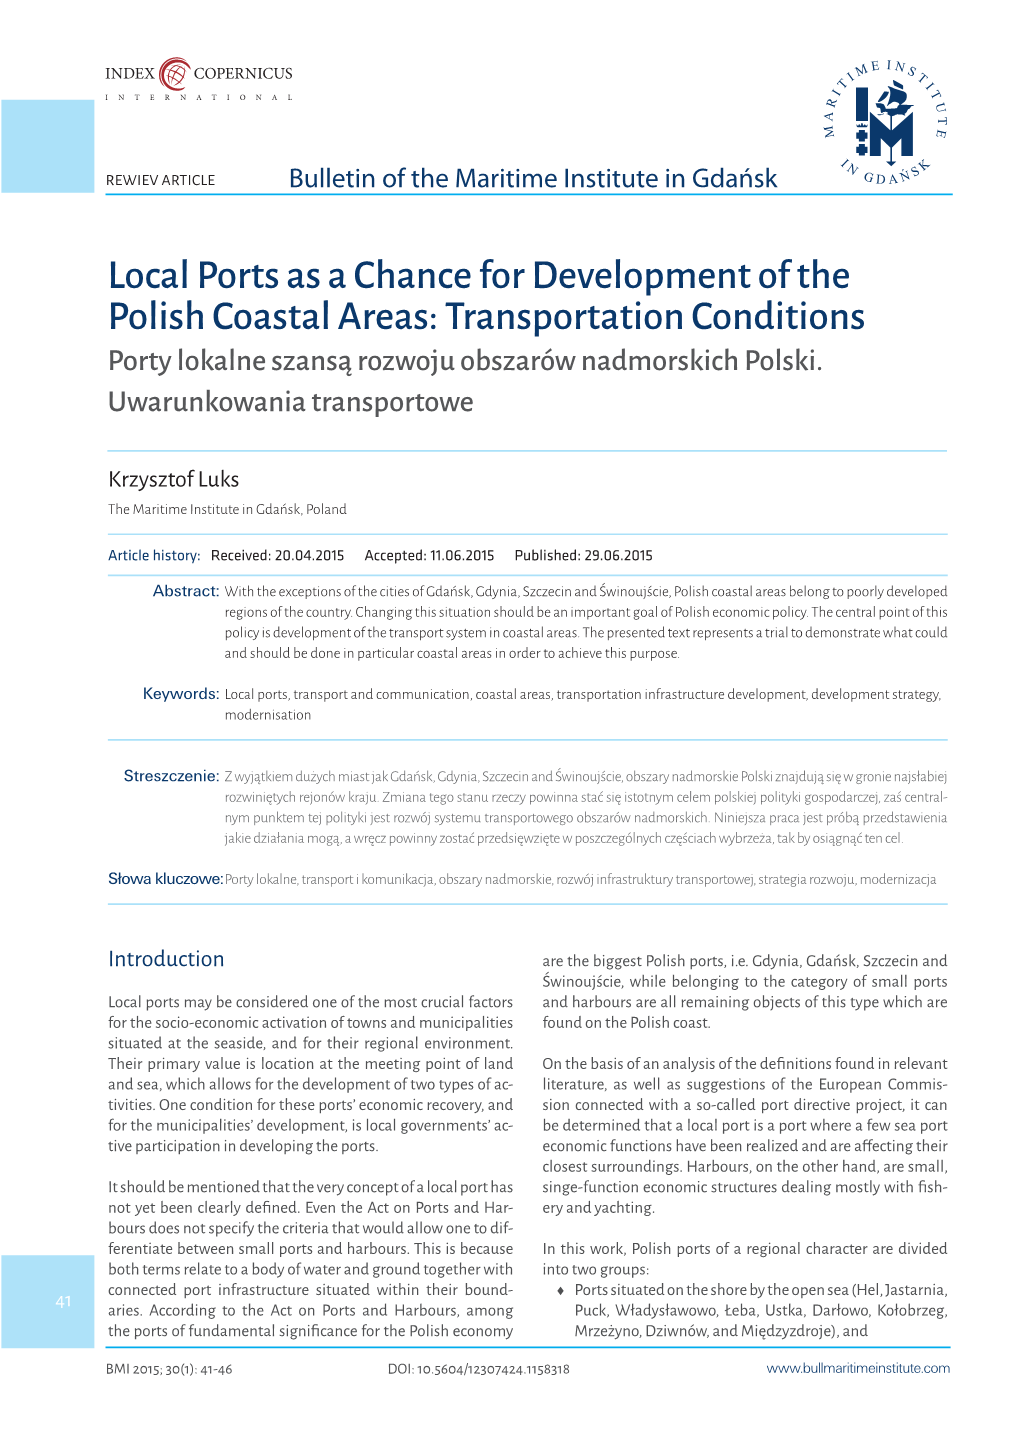 Local Ports As a Chance for Development of the Polish Coastal Areas: Transportation Conditions Porty Lokalne Szansą Rozwoju Obszarów Nadmorskich Polski